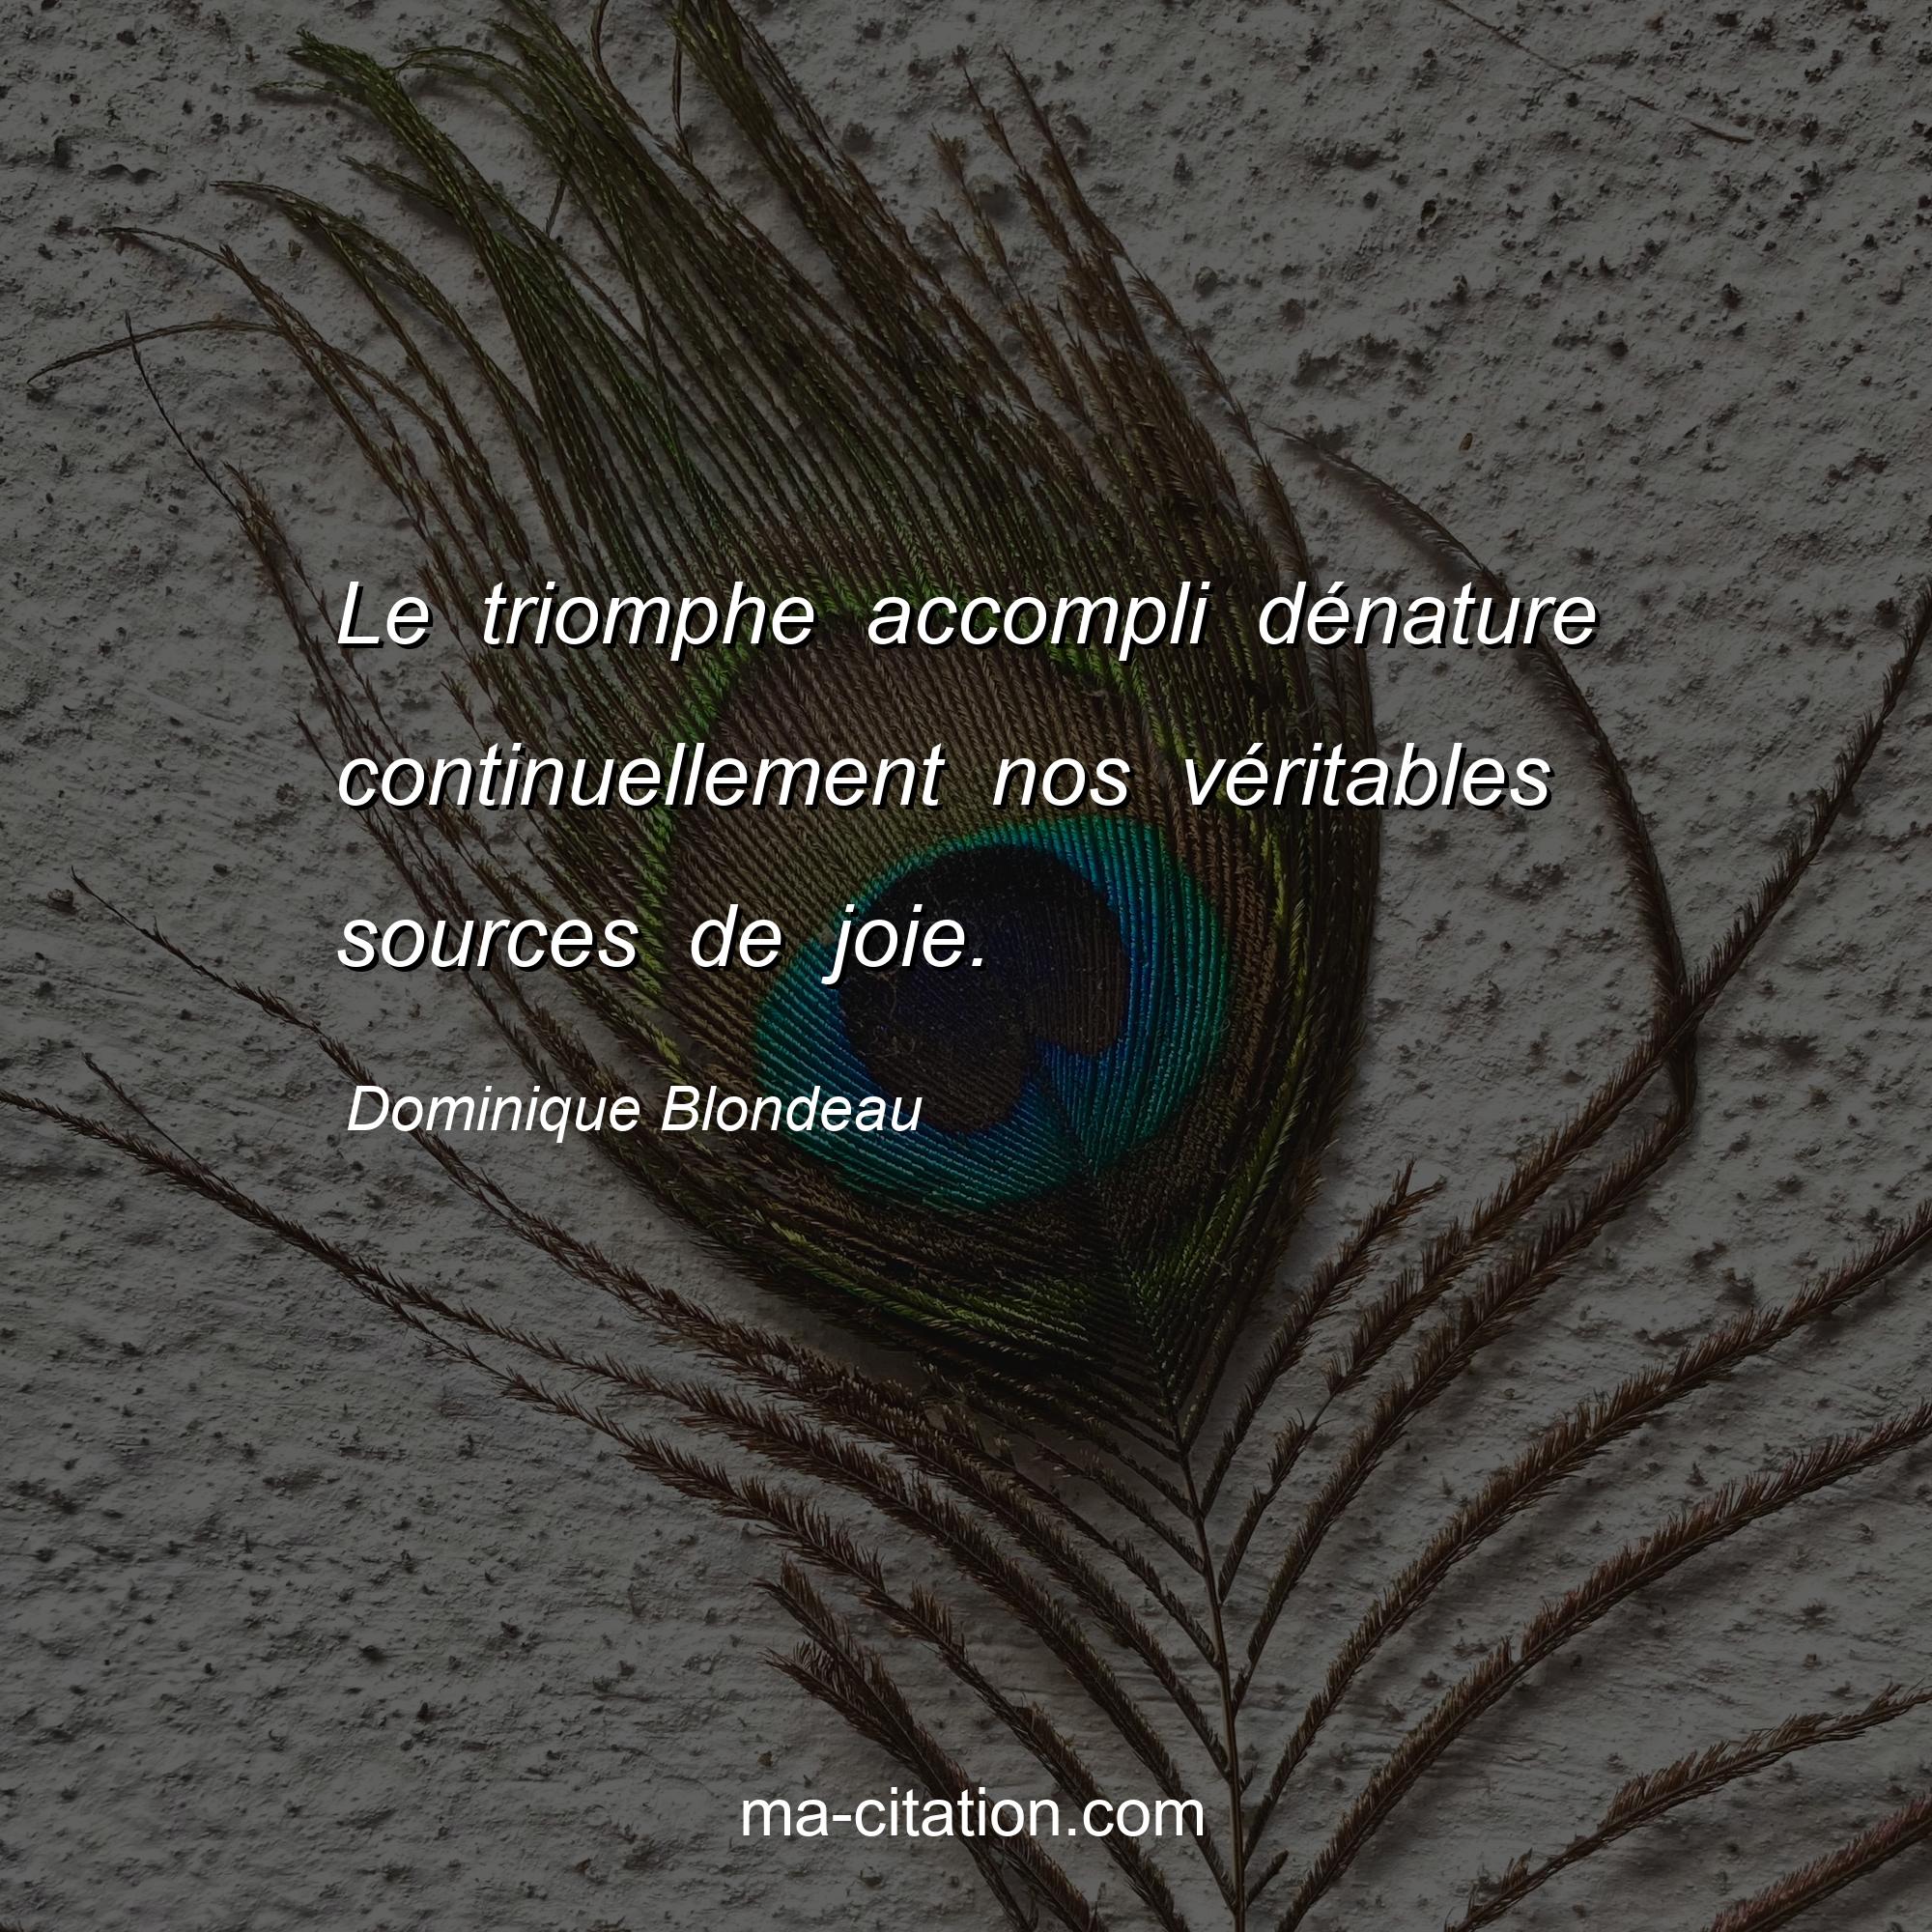 Dominique Blondeau : Le triomphe accompli dénature continuellement nos véritables sources de joie.